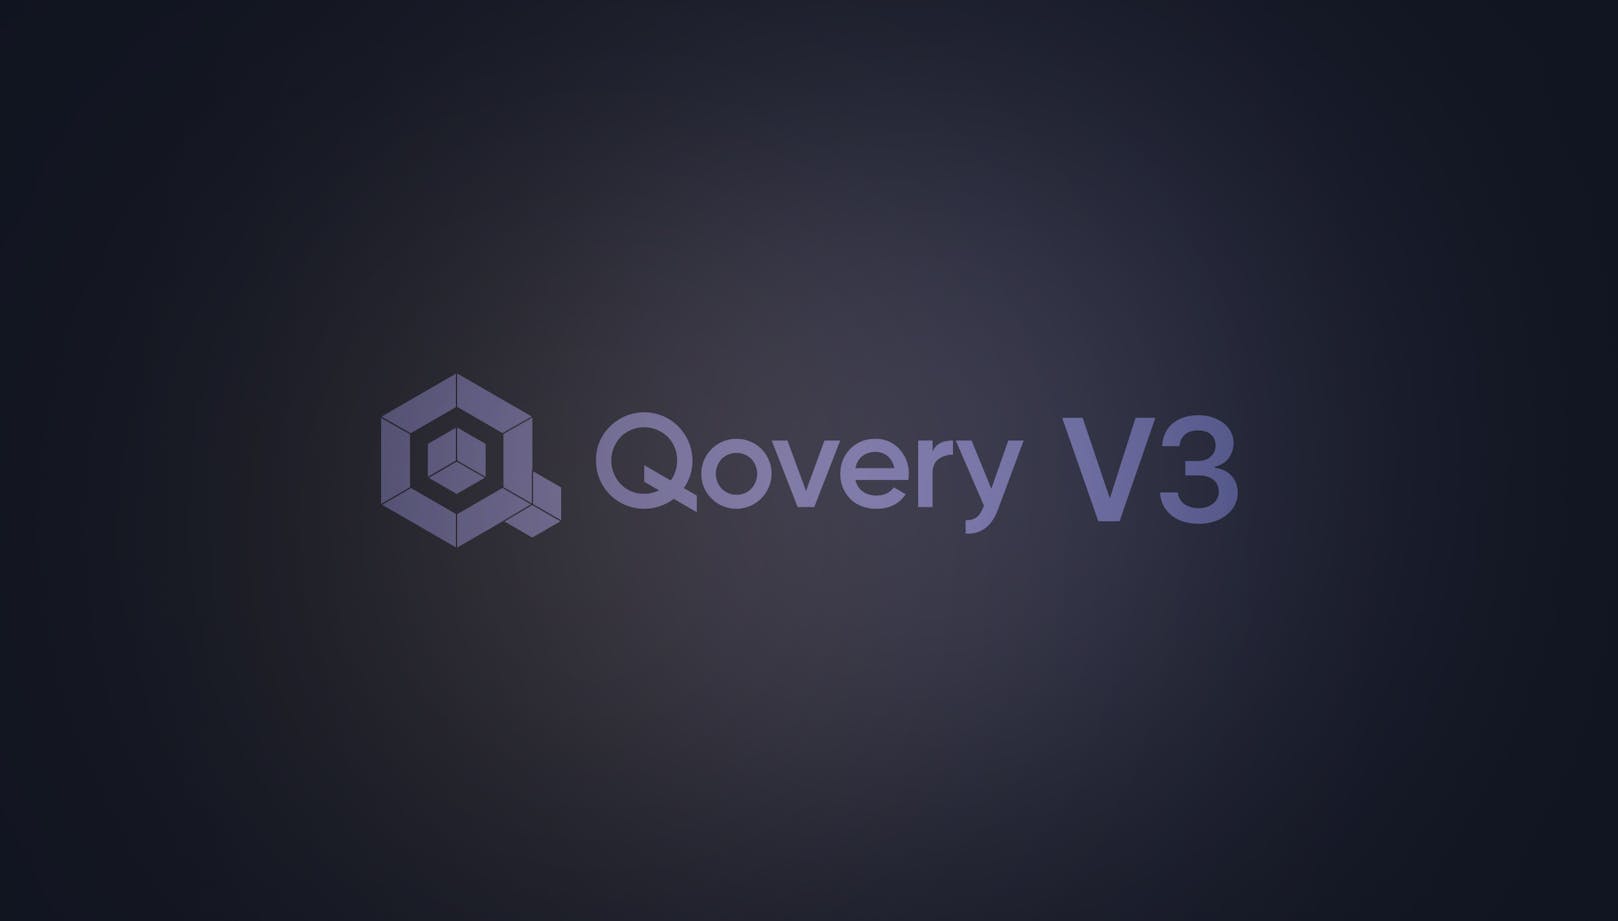 Qovery V3 is Here - Qovery